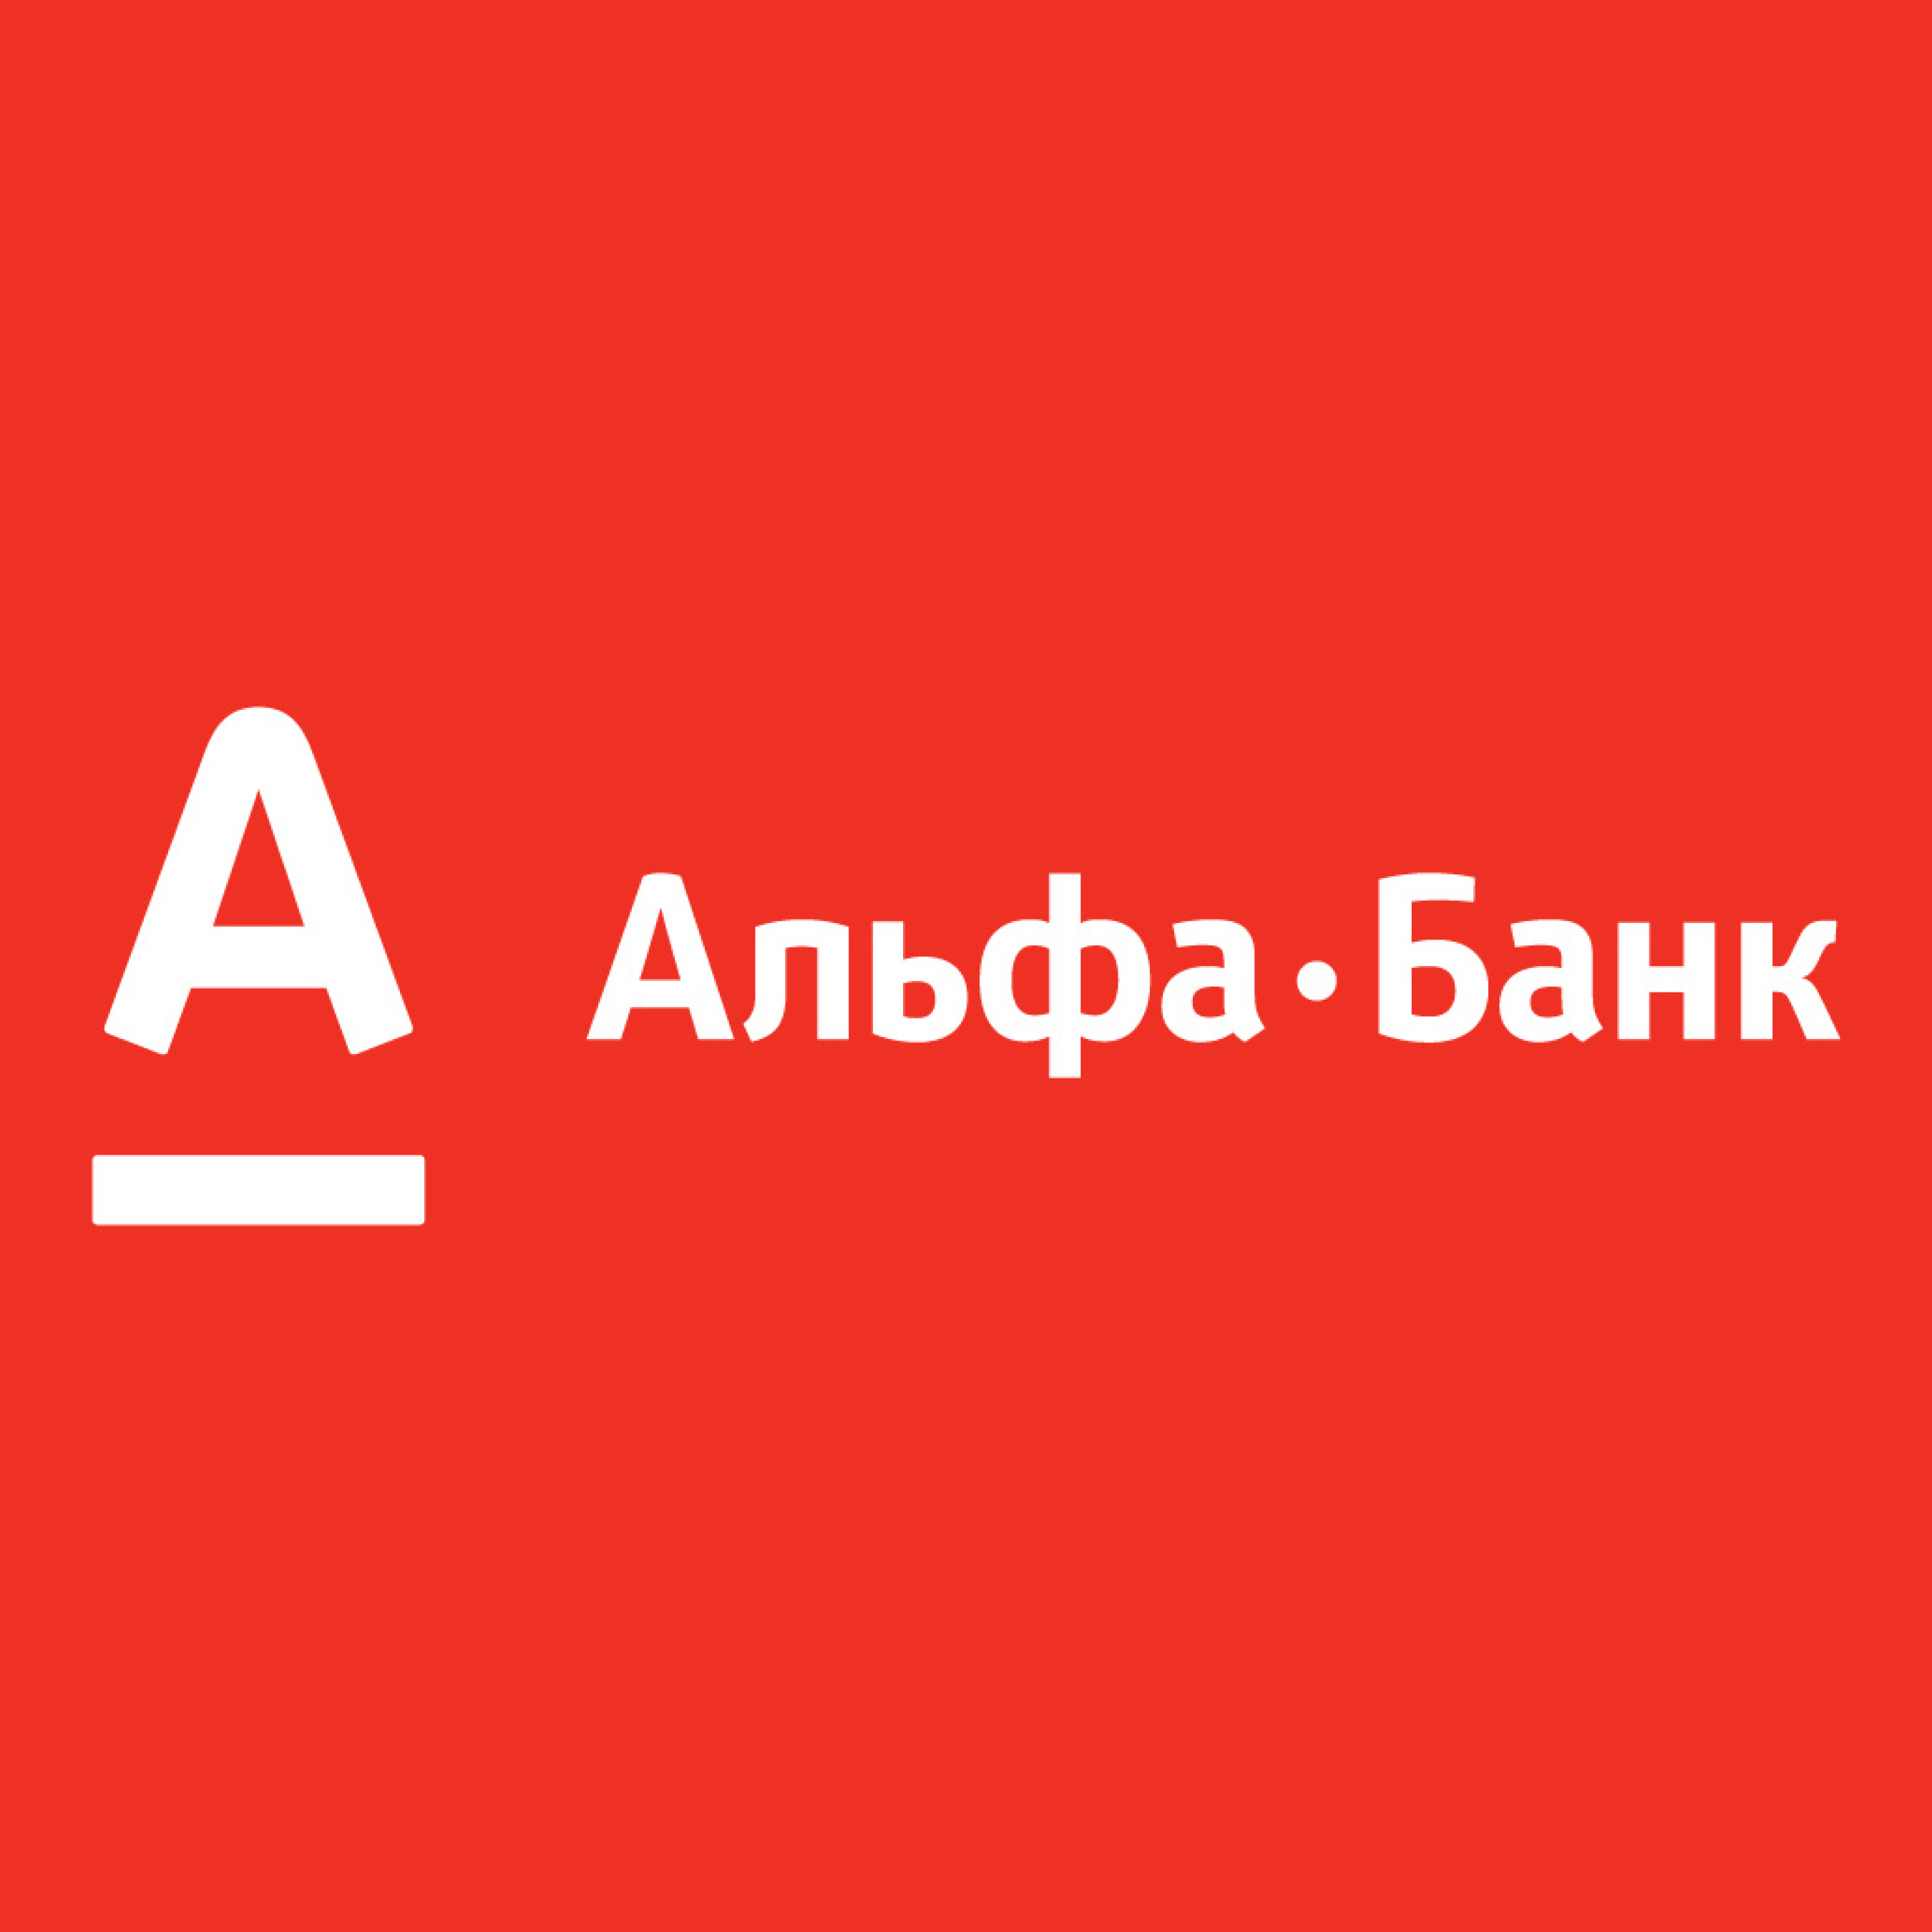 Альфа банк. Логотип банка Альфа банк. Альфа банк Казахстан логотип. Альфа банк логотип новый. Альфа банк озон кабинет